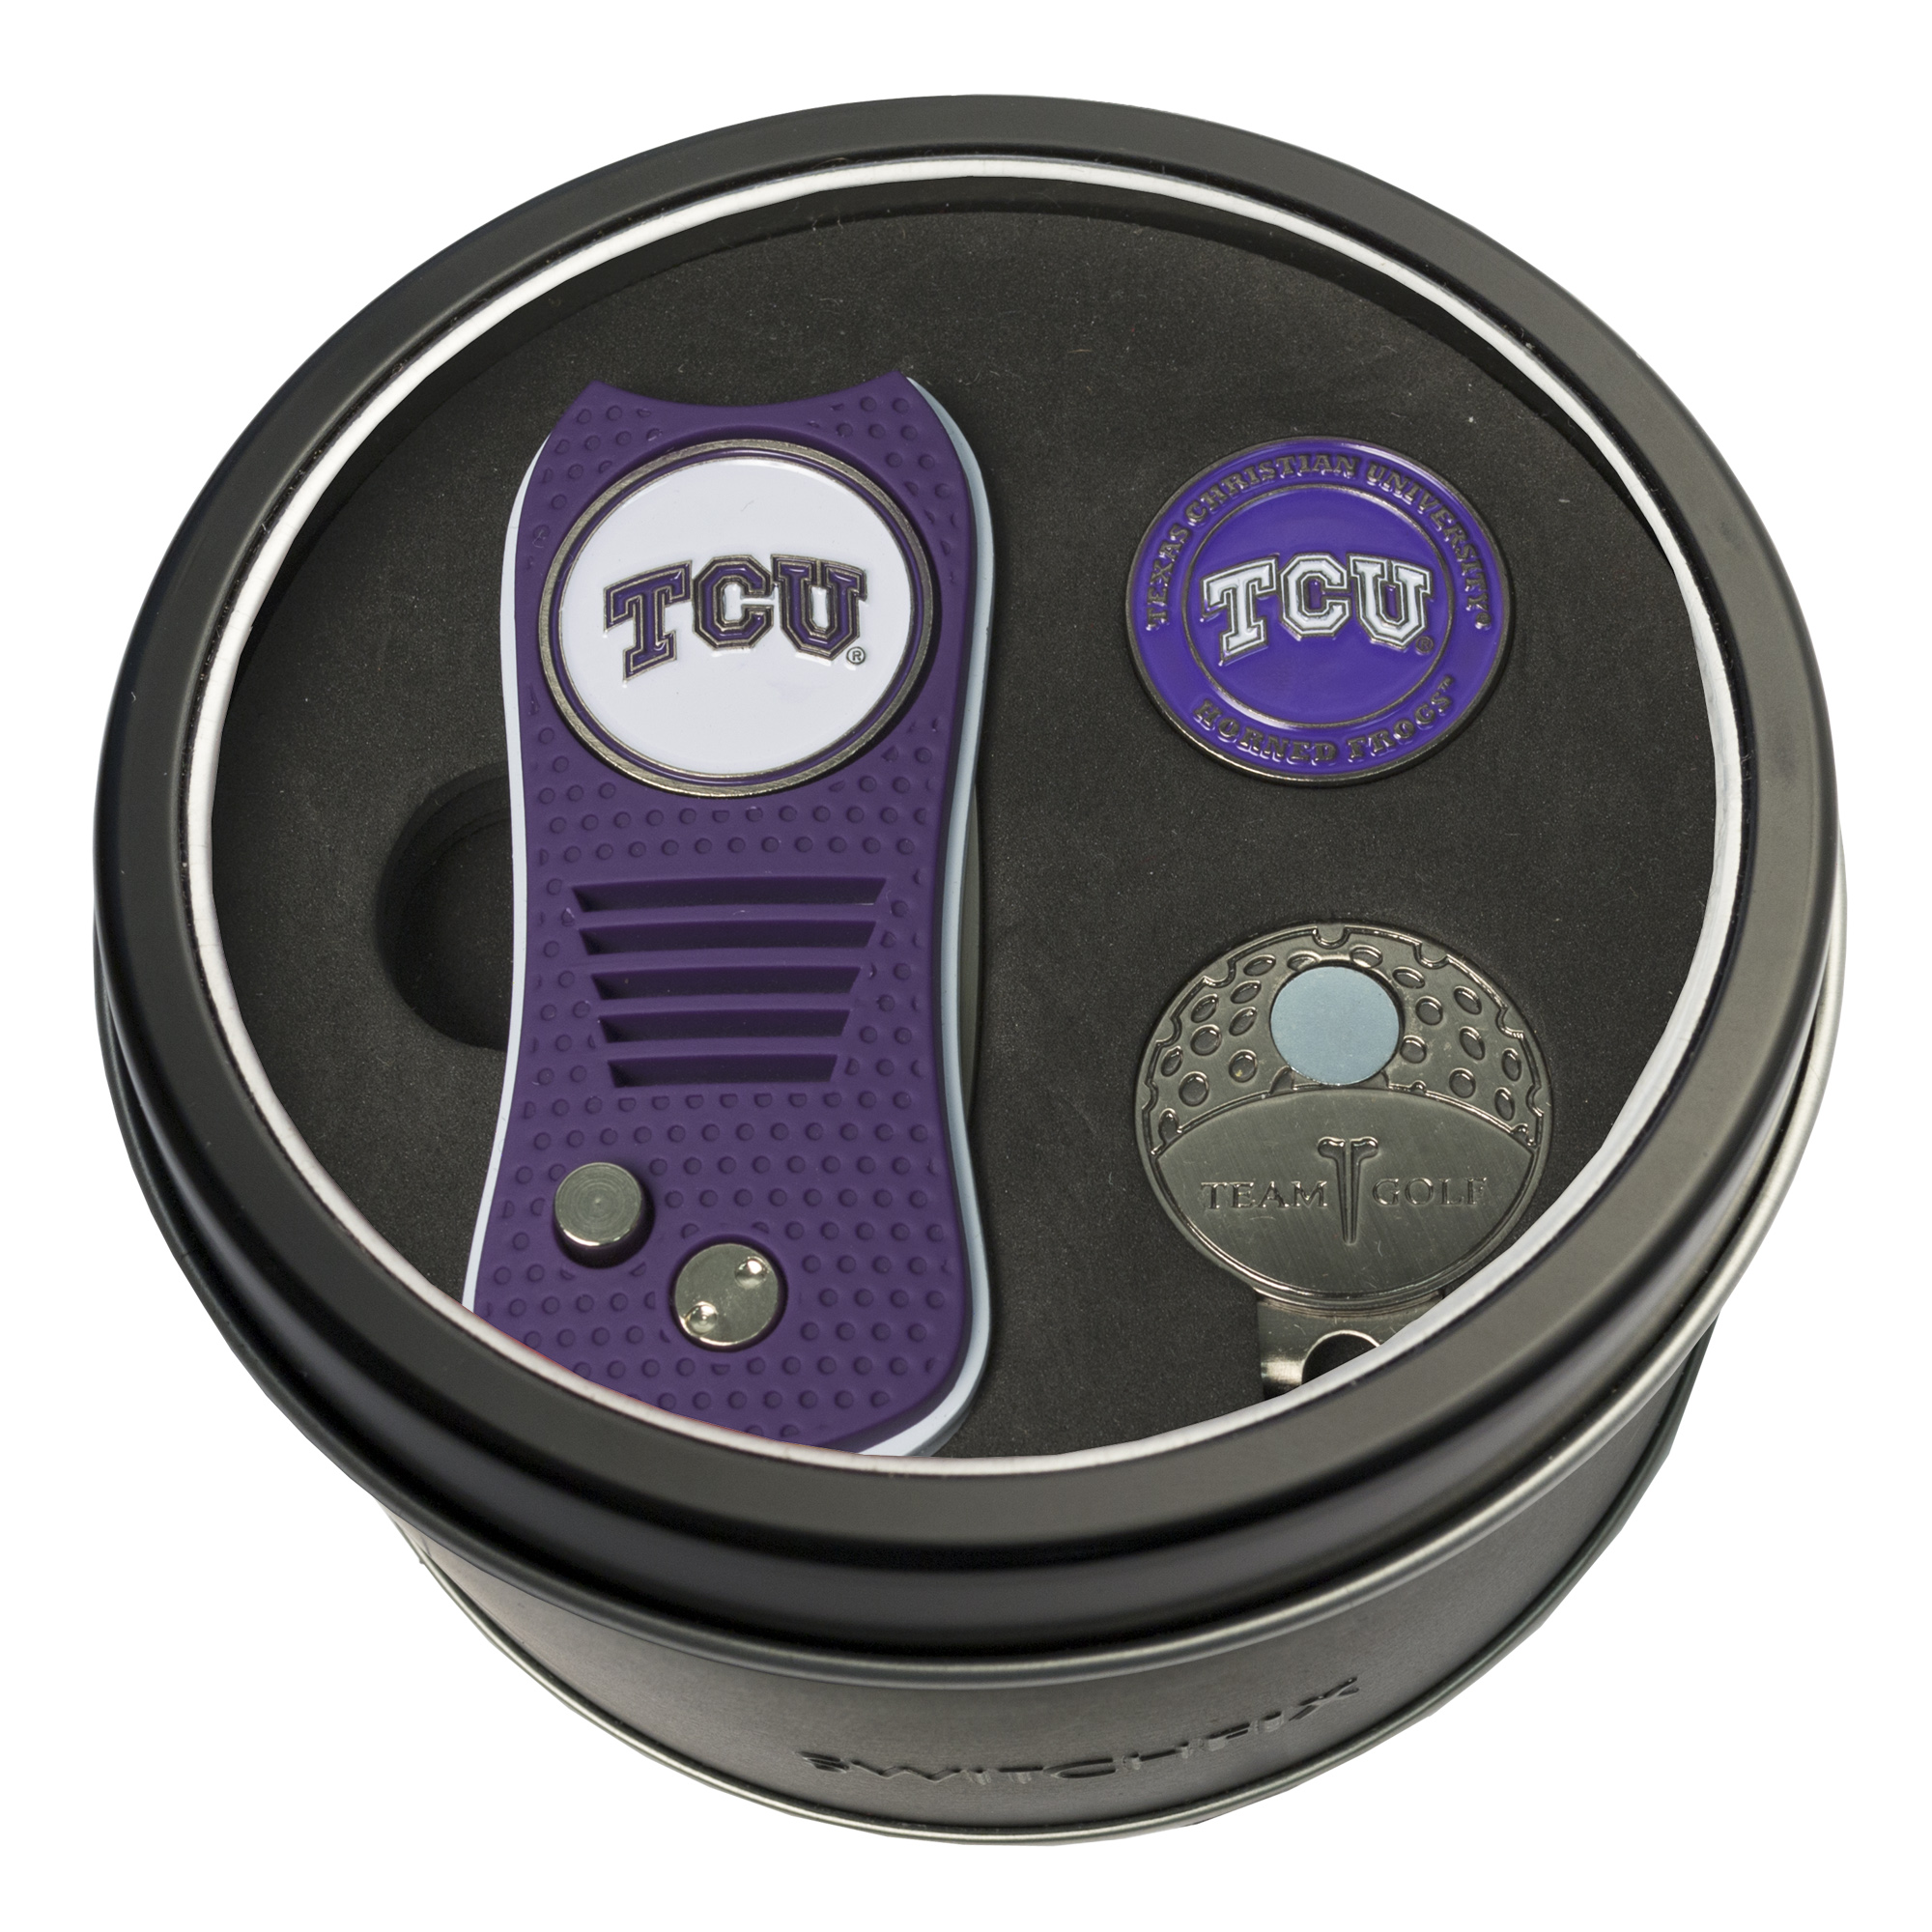 TCU Switchfix + Cap Clip + Ball Marker Tin Gift Set